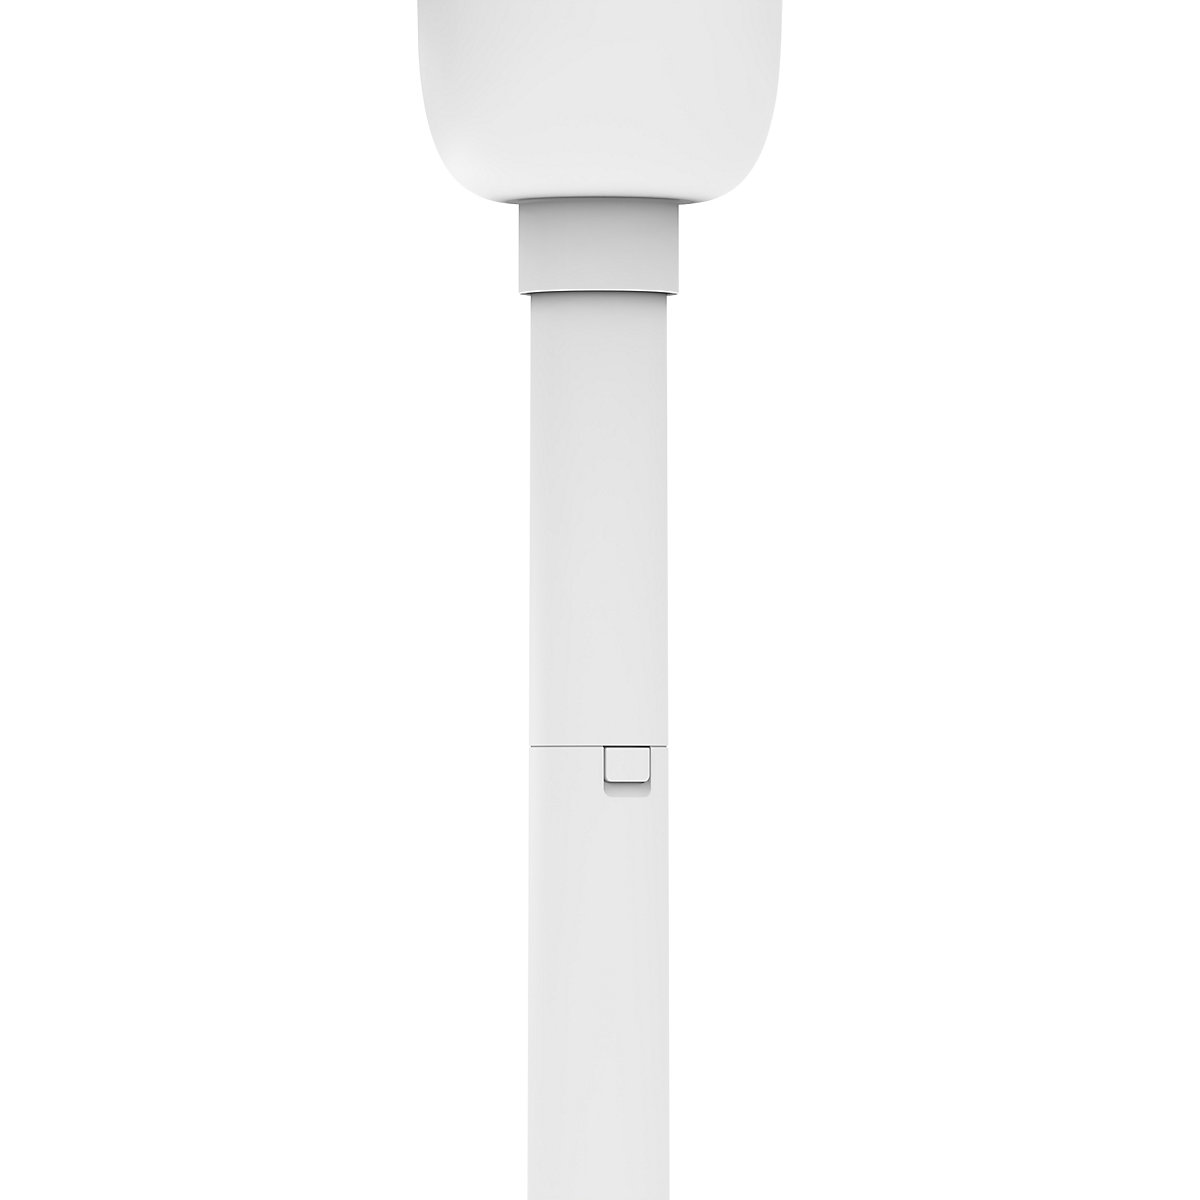 Ventilator de masă/cu picior FAN1 – IDEAL (Imagine produs 16)-15